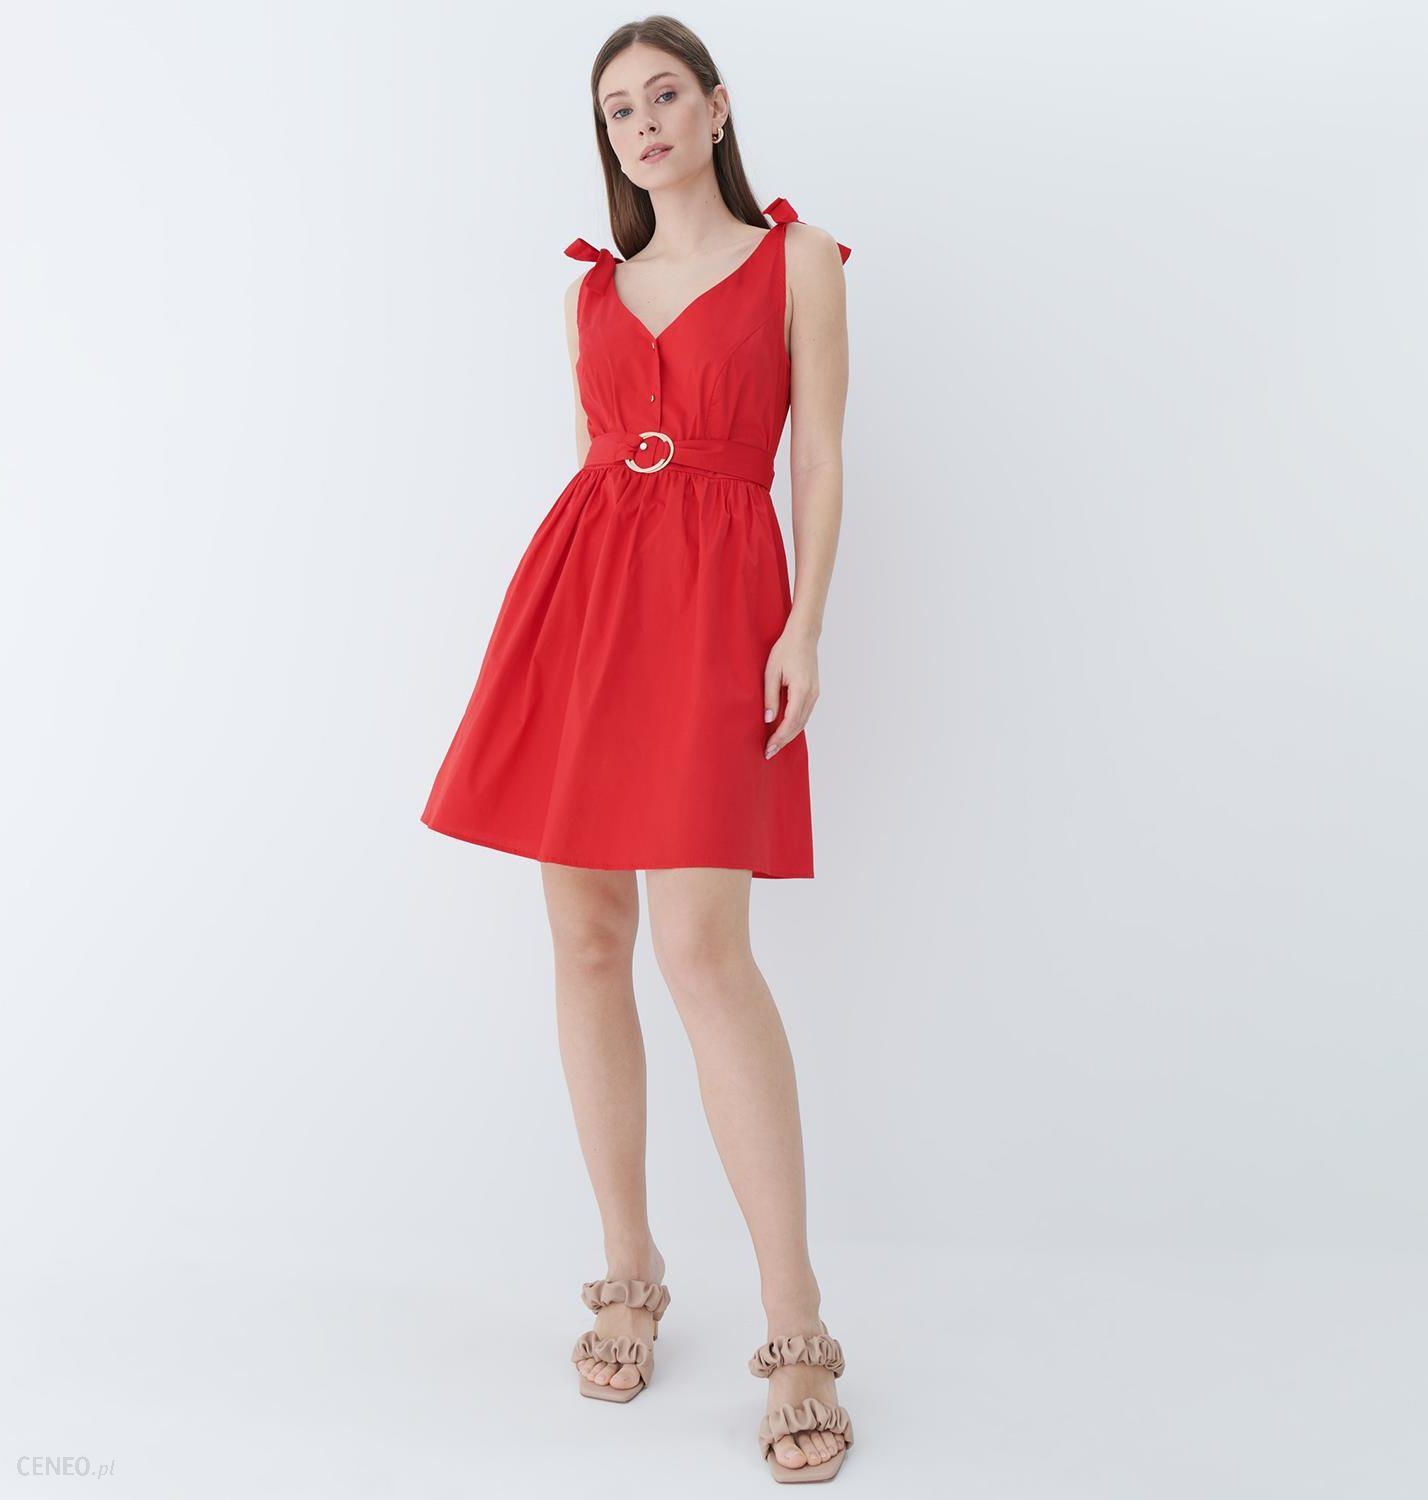 Mohito - Rozkloszowana sukienka z paskiem - Czerwony - Ceny i opinie -  